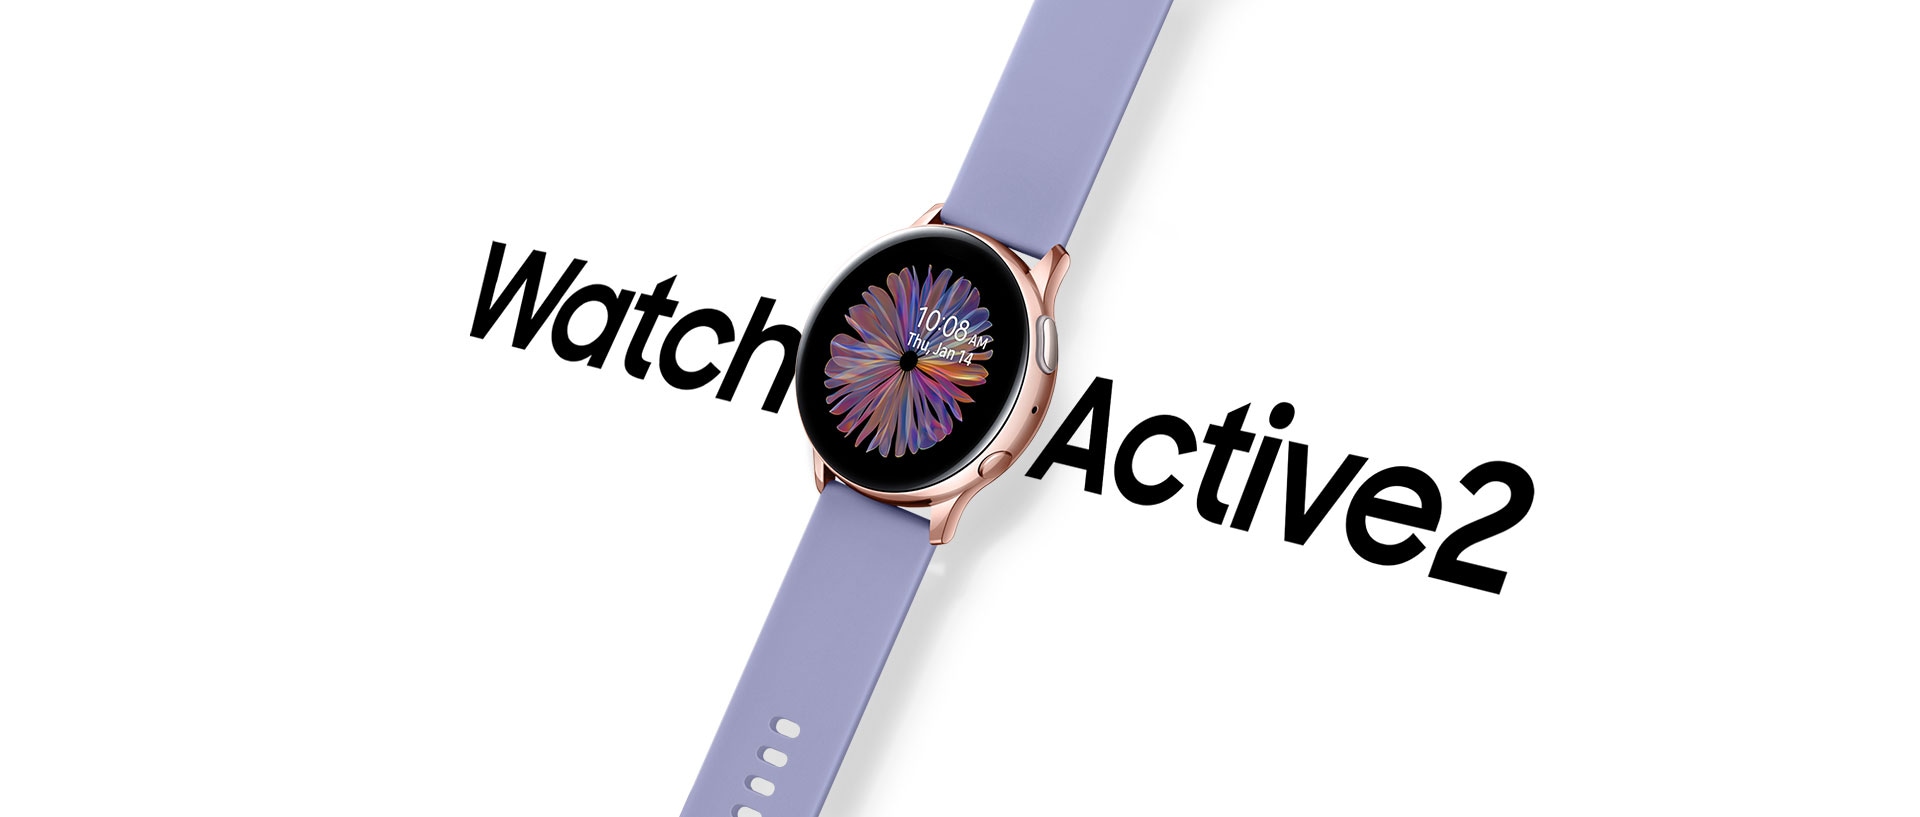 搭配紫色運動錶帶的星魅紫Galaxy Watch Active2智慧手錶斜放，飄浮在白色背景上，手錶兩側為「Watch Active 2」的大型黑色文字。